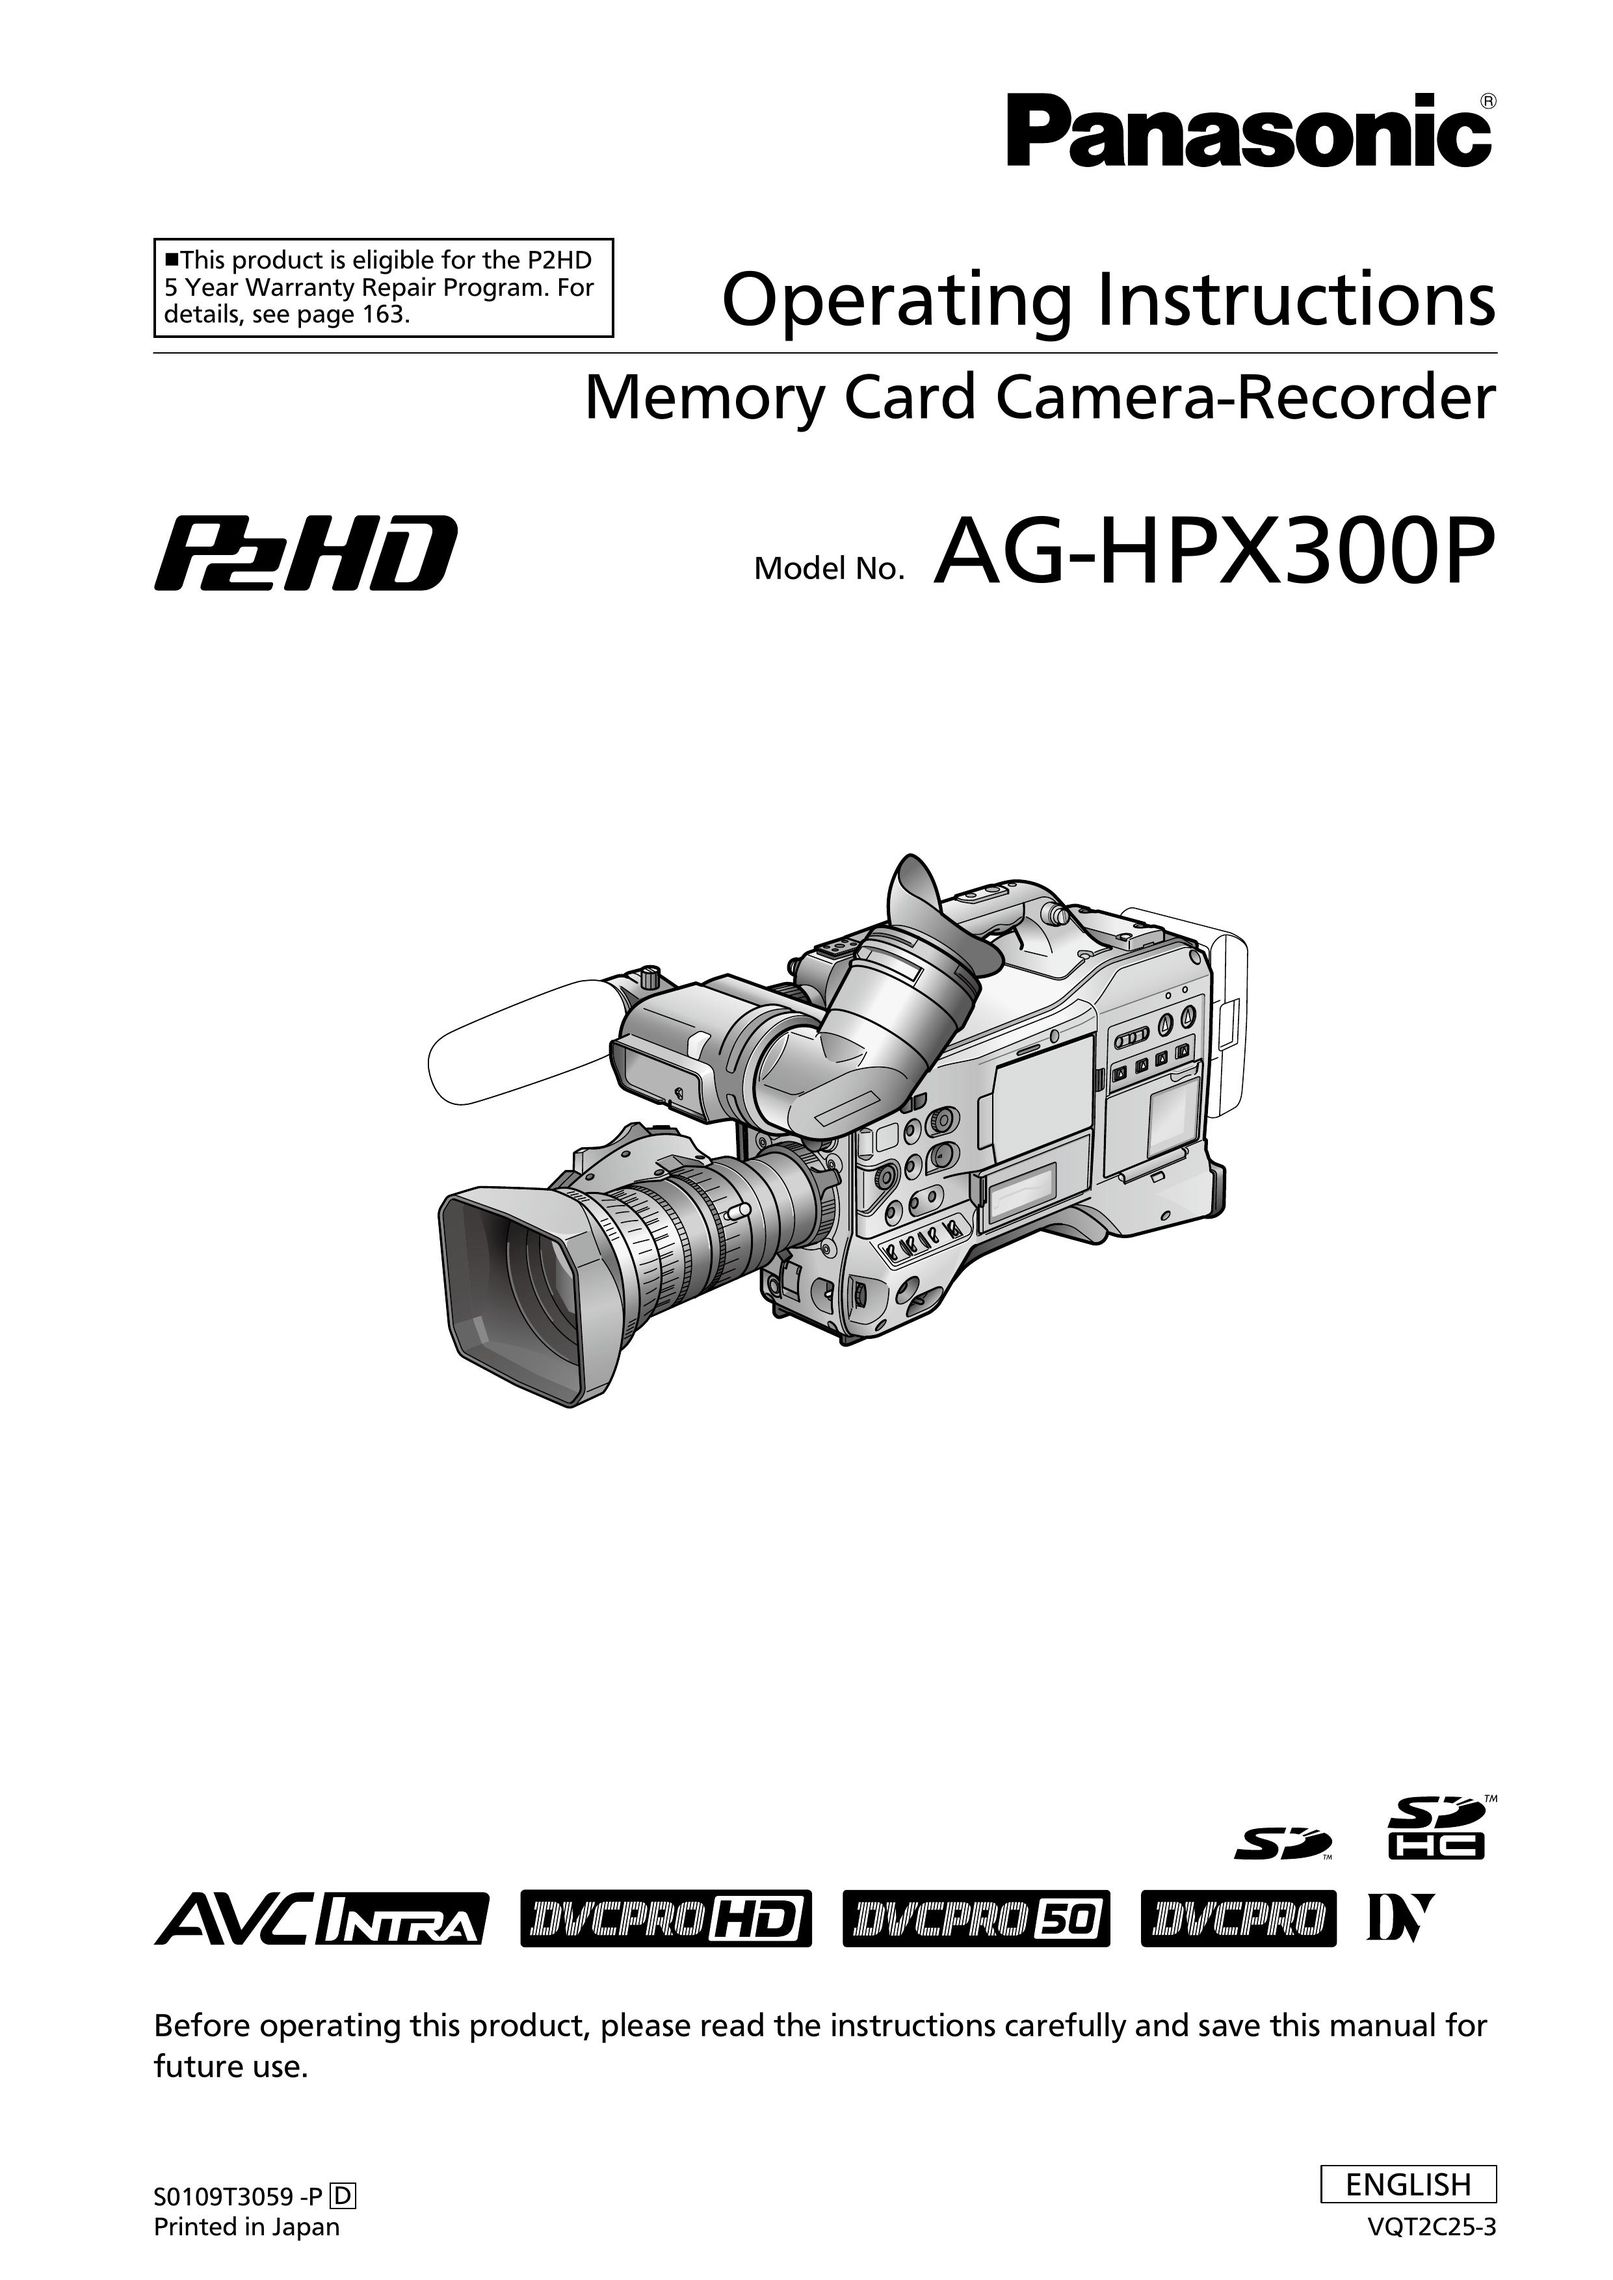 Panasonic ag-hpx300p DVR User Manual